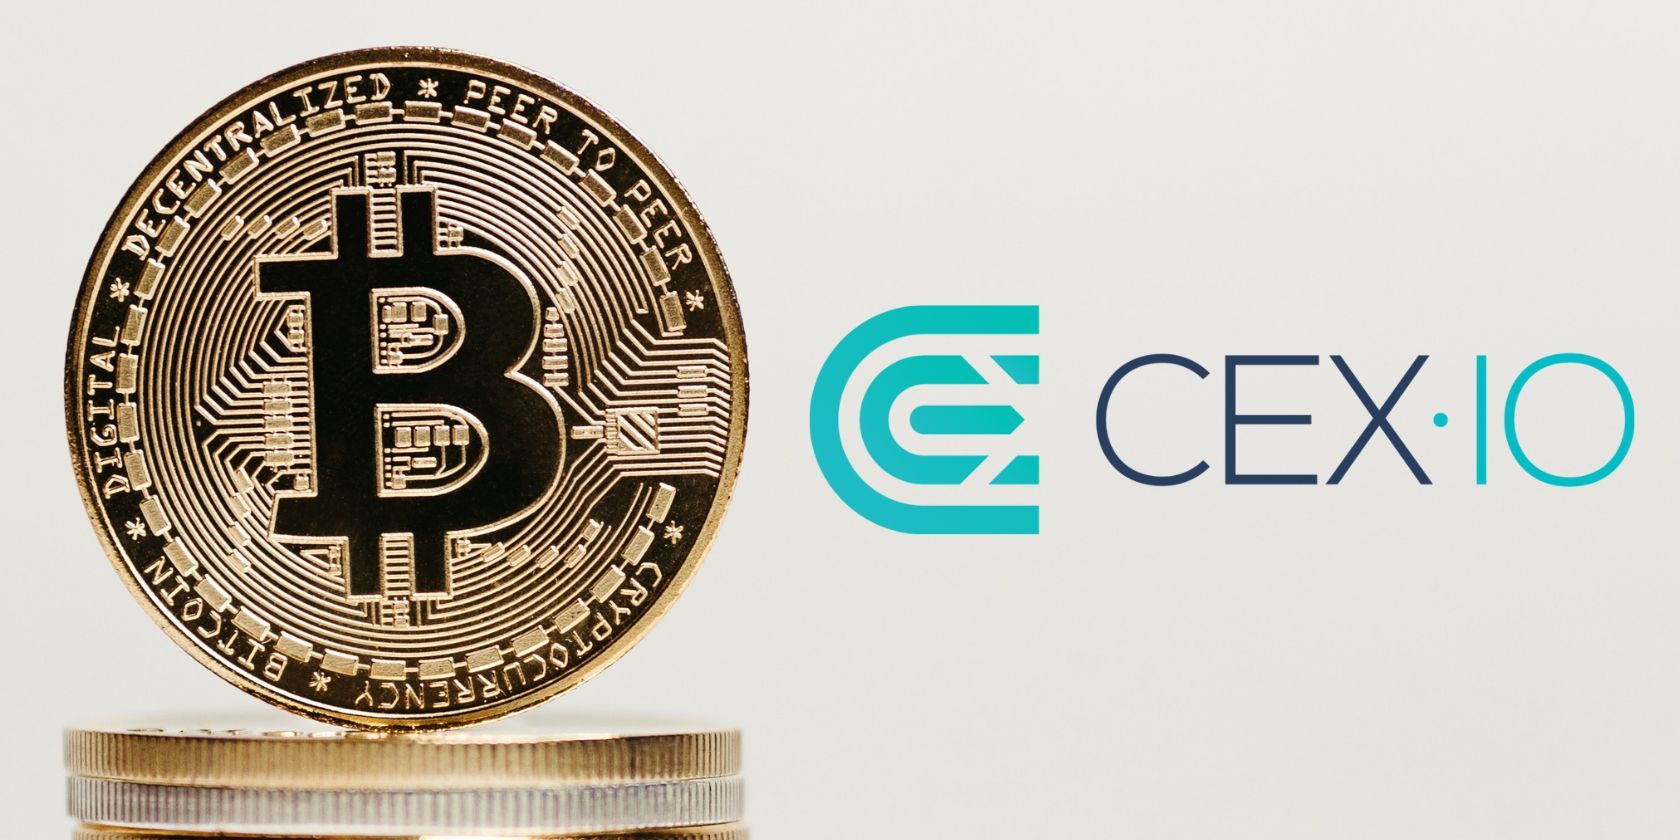 cex.io logo next to a stack of bitcoins